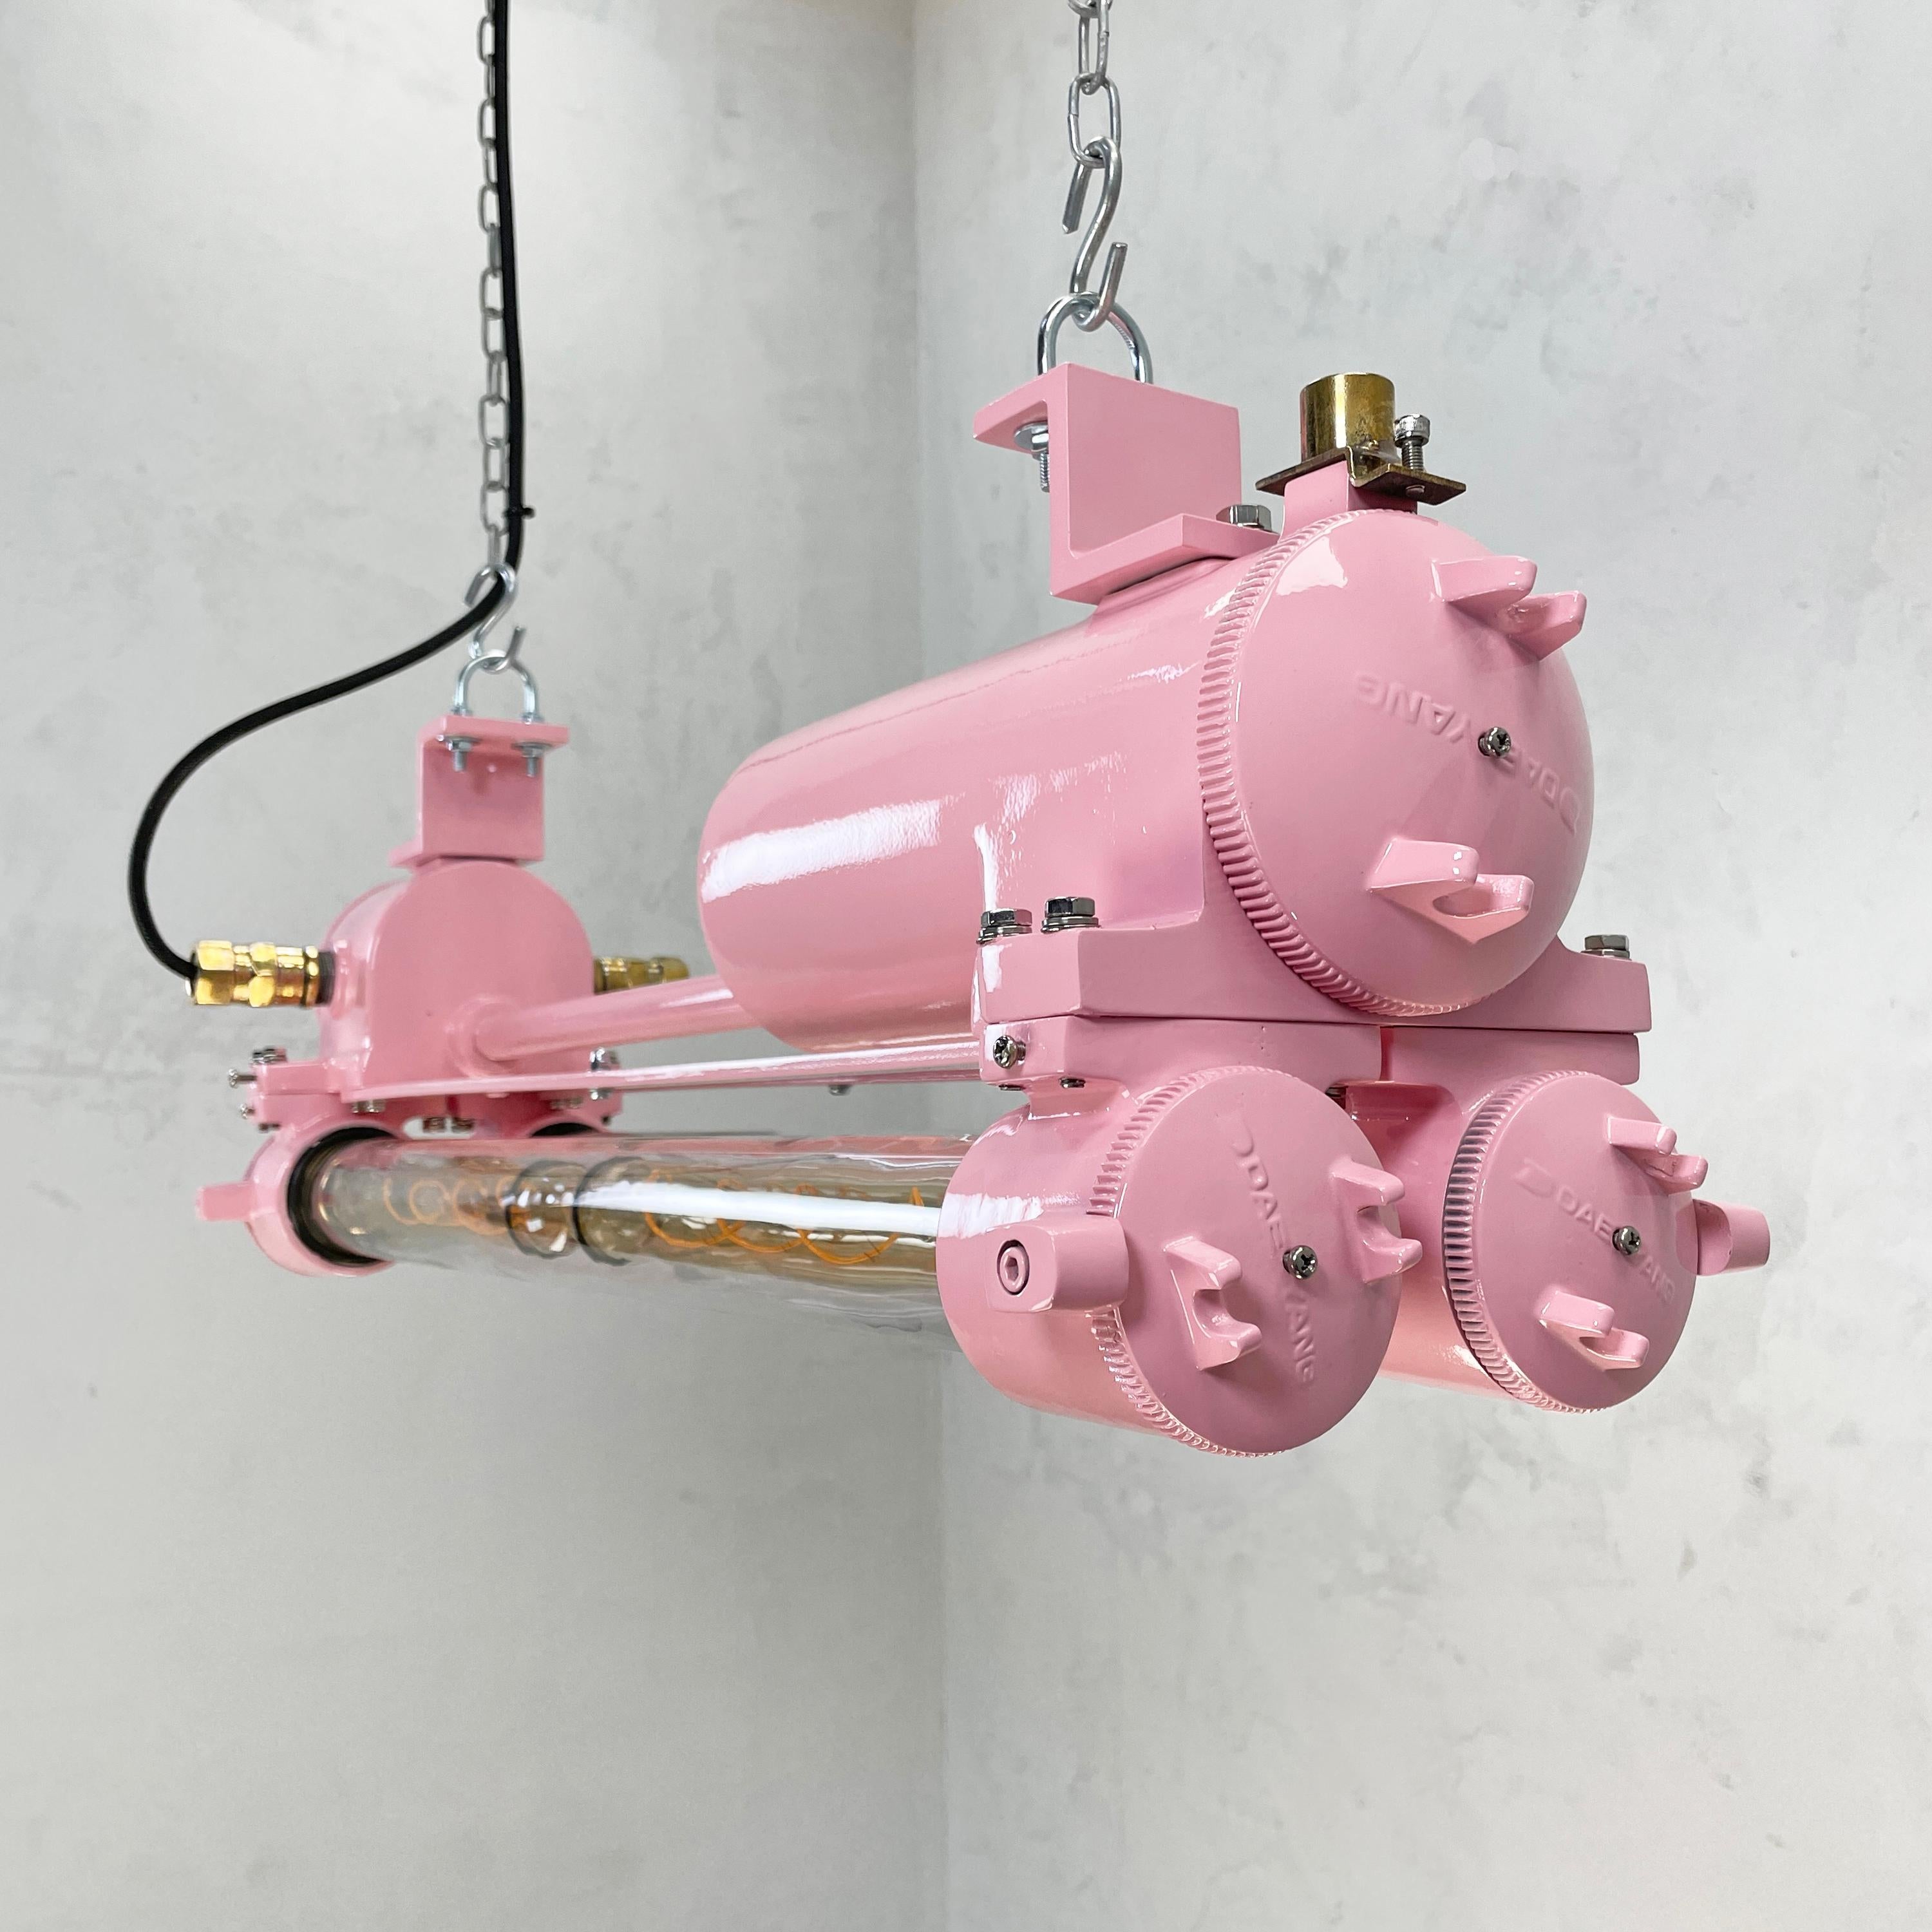 Ein rosa Vintage industrielle Edison LED flammensichere Zwillingsröhre Deckenbeleuchtung fertig mit rosa Farbe. Hergestellt von Daeyang (Südkorea) um 1970

Das Hauptgehäuse besteht aus Aluminiumguss mit Beschlägen aus Stahl und Messing. Die Rohre